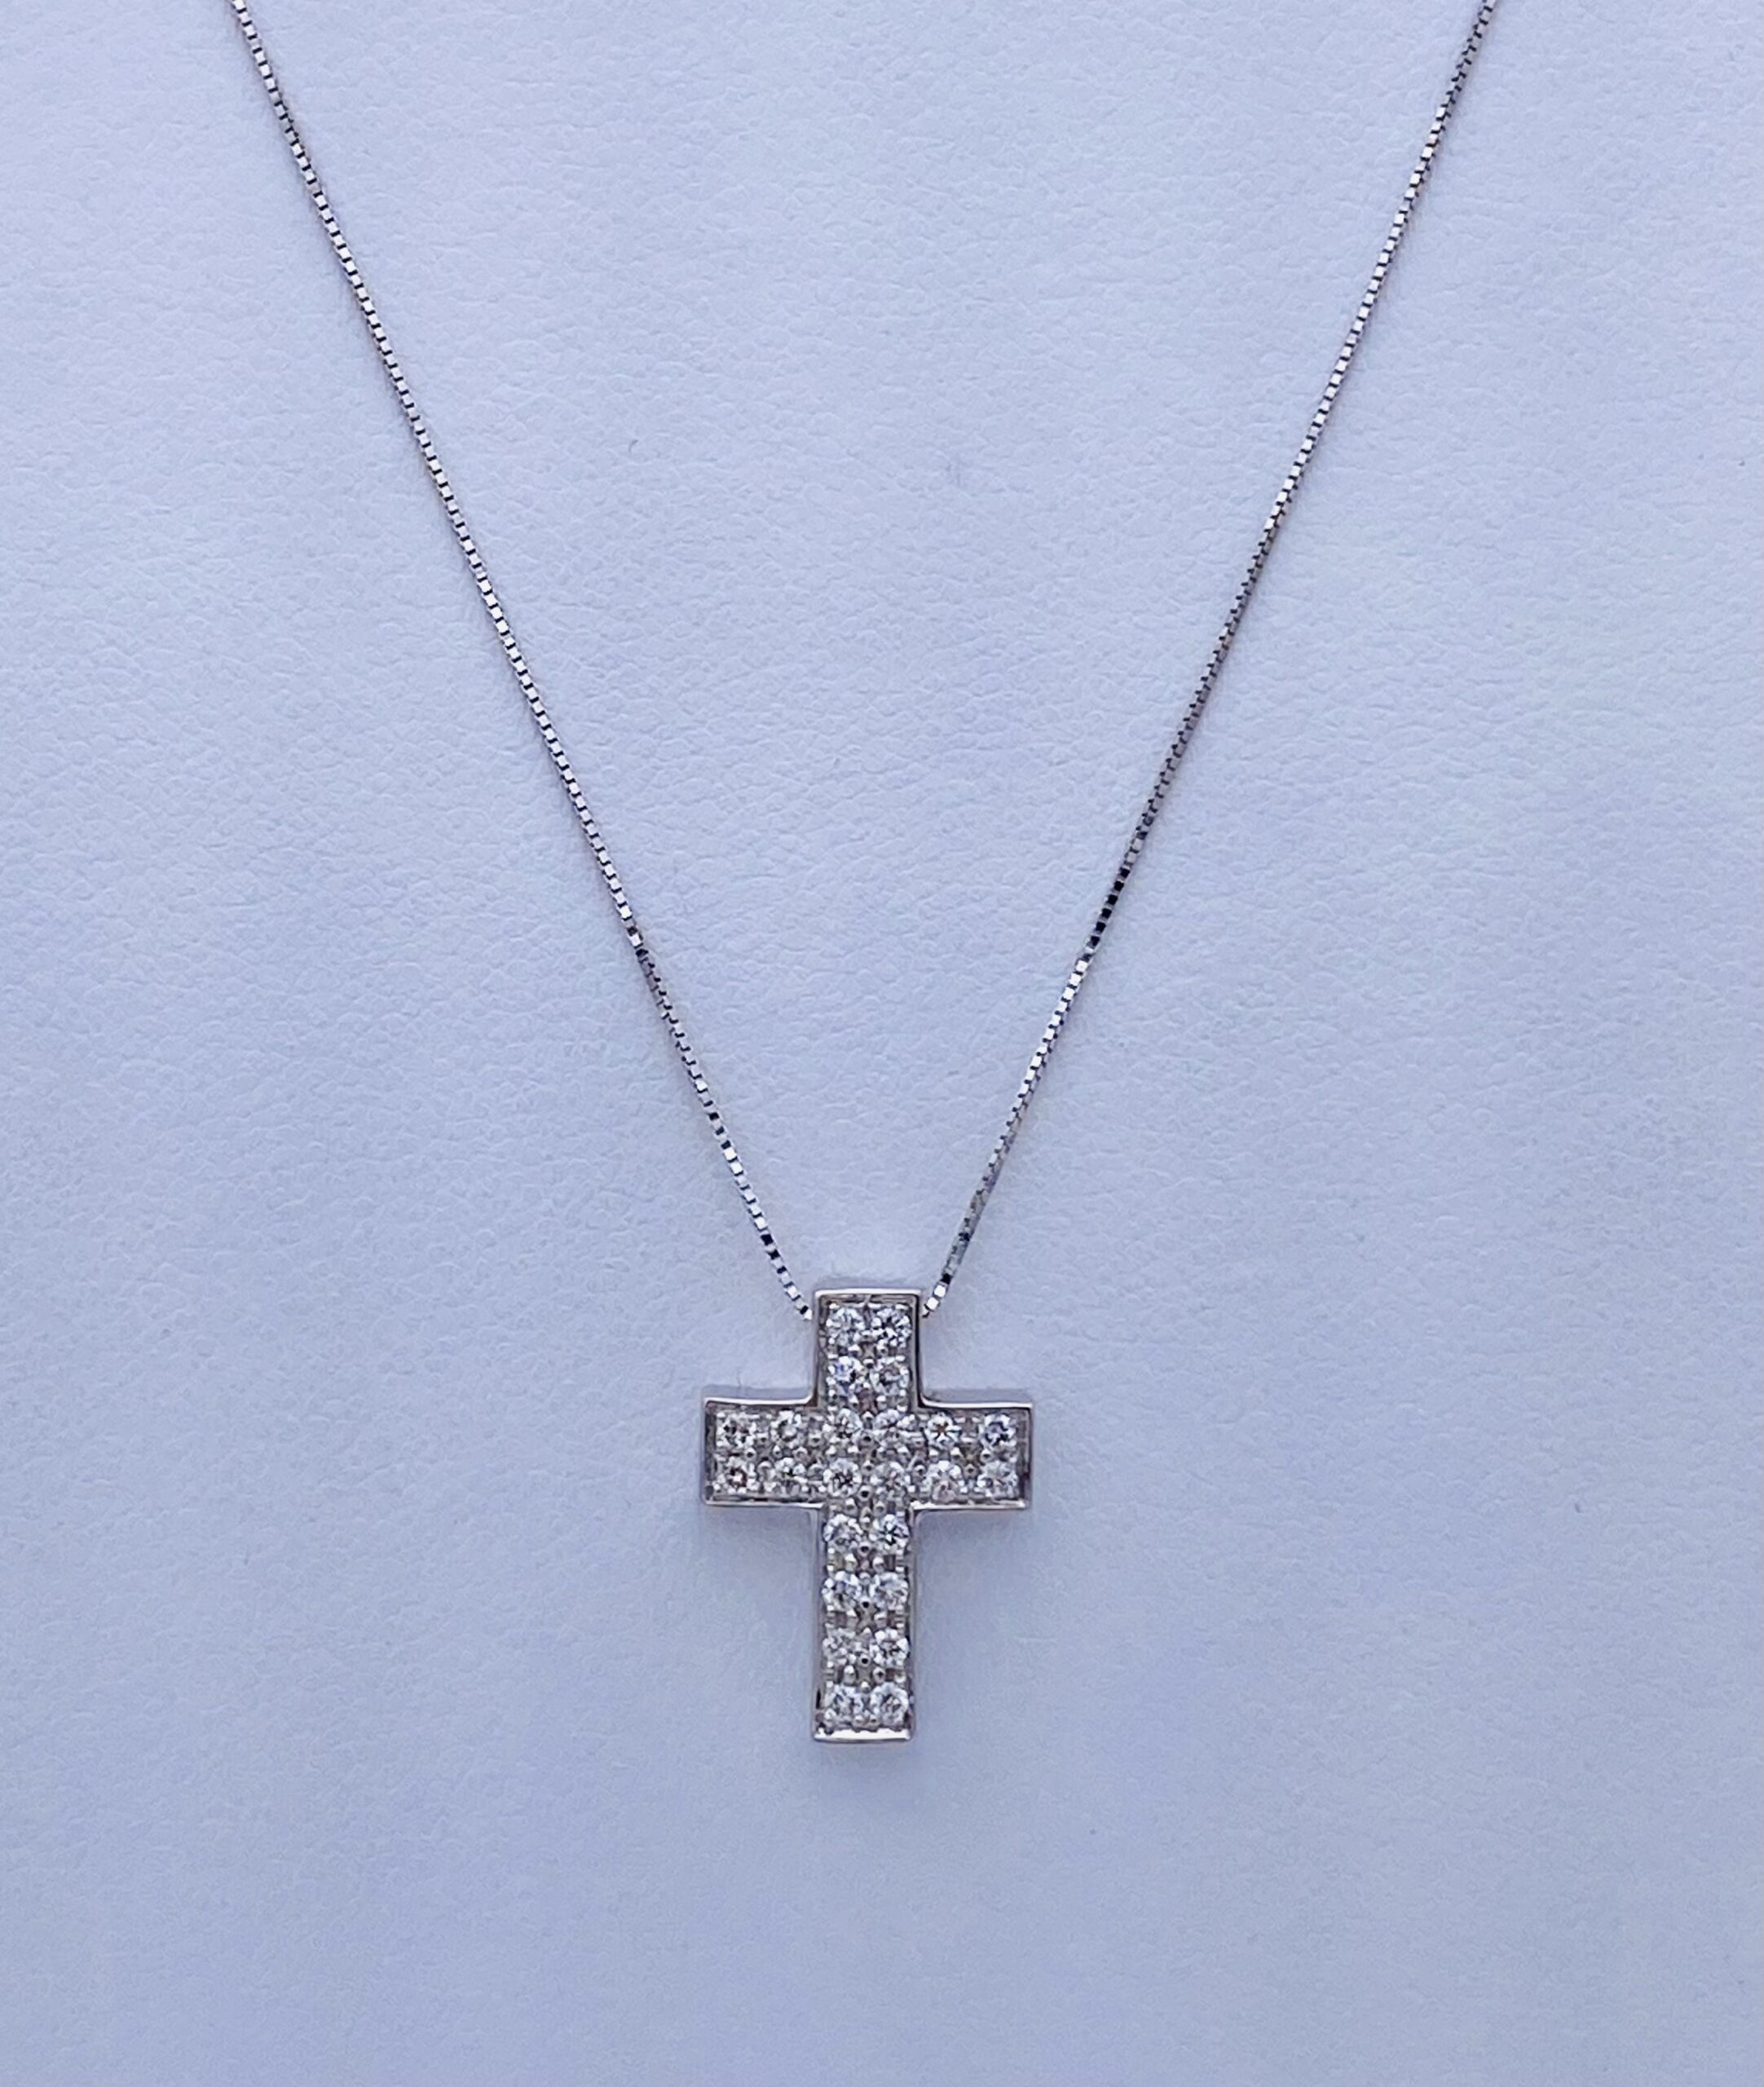 White gold 750% cross pendant and diamonds Art. GR371